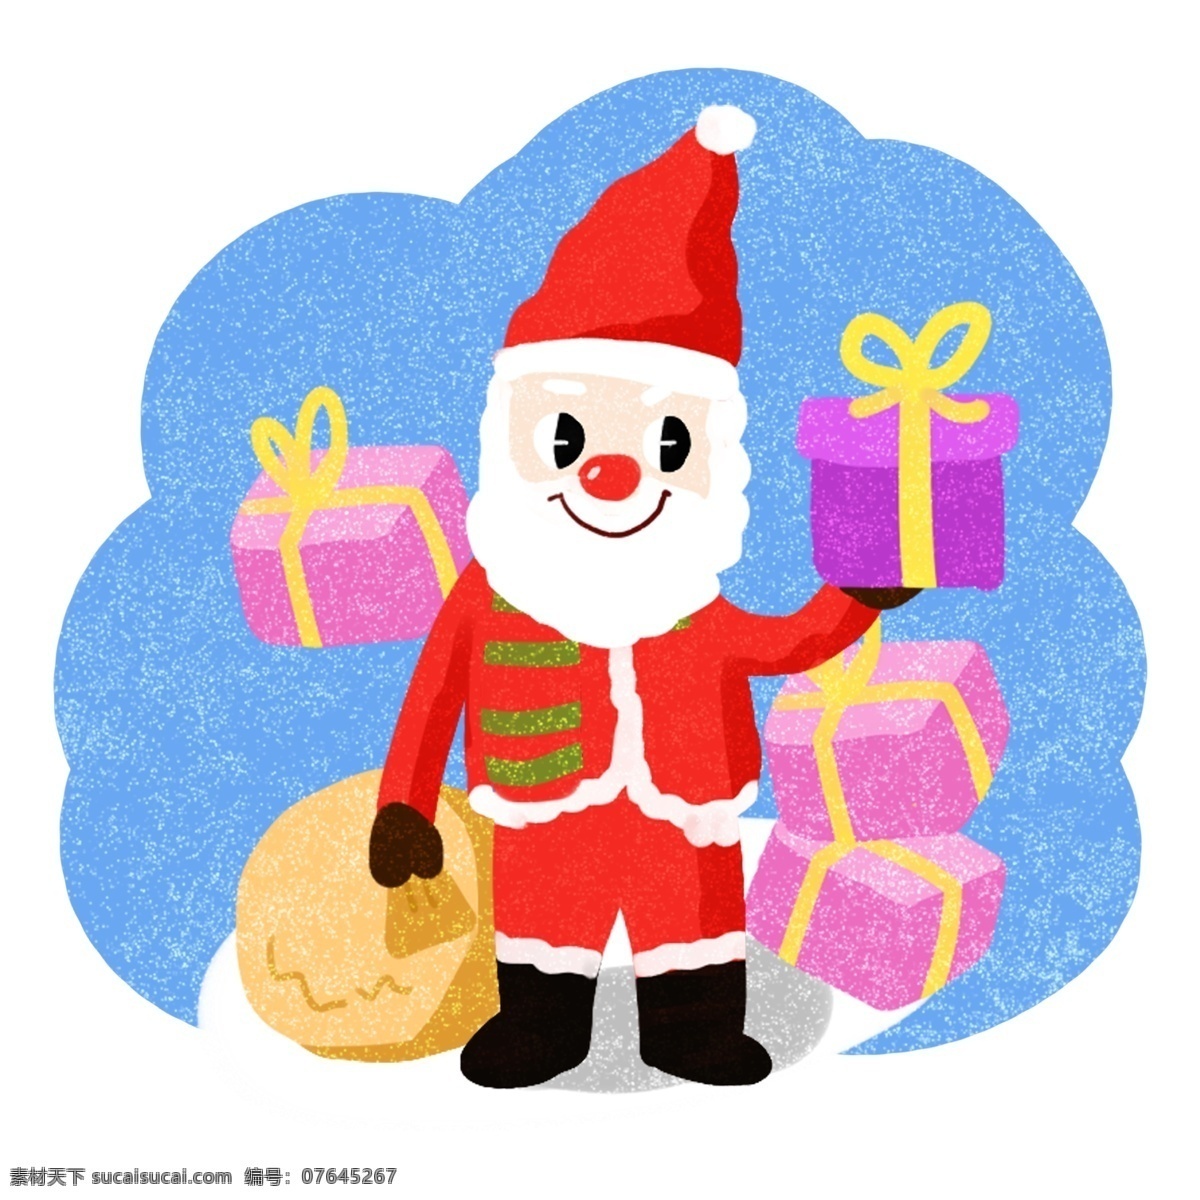 圣诞节 可爱 圣诞老人 卡通 插画 很多 礼物 合集 圣诞 过节 节日 冬季 淘宝 天猫 海报 活动 促销 大促 送礼物的老人